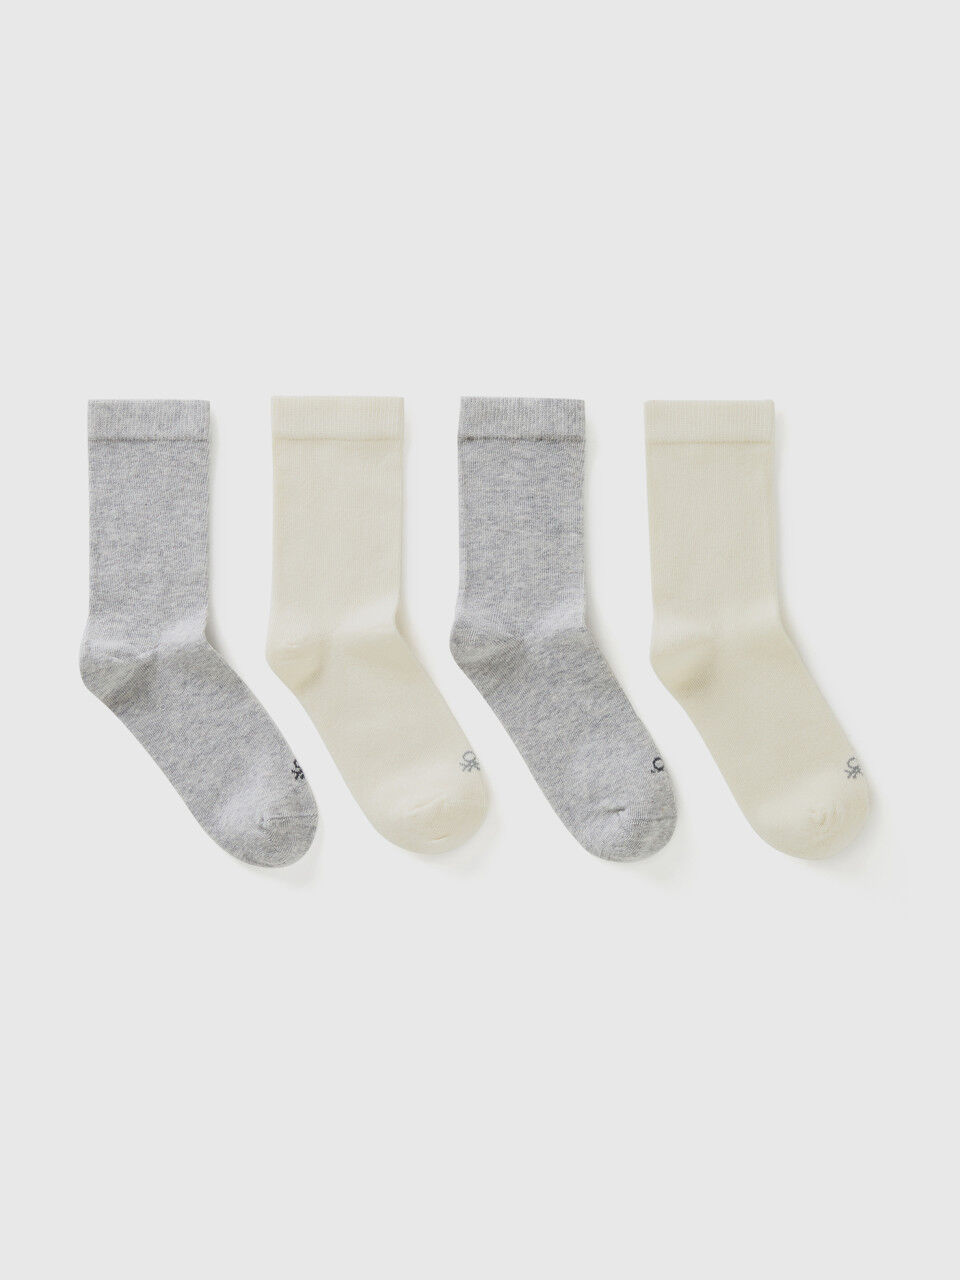 Quattro paia di calze bianche e grigie